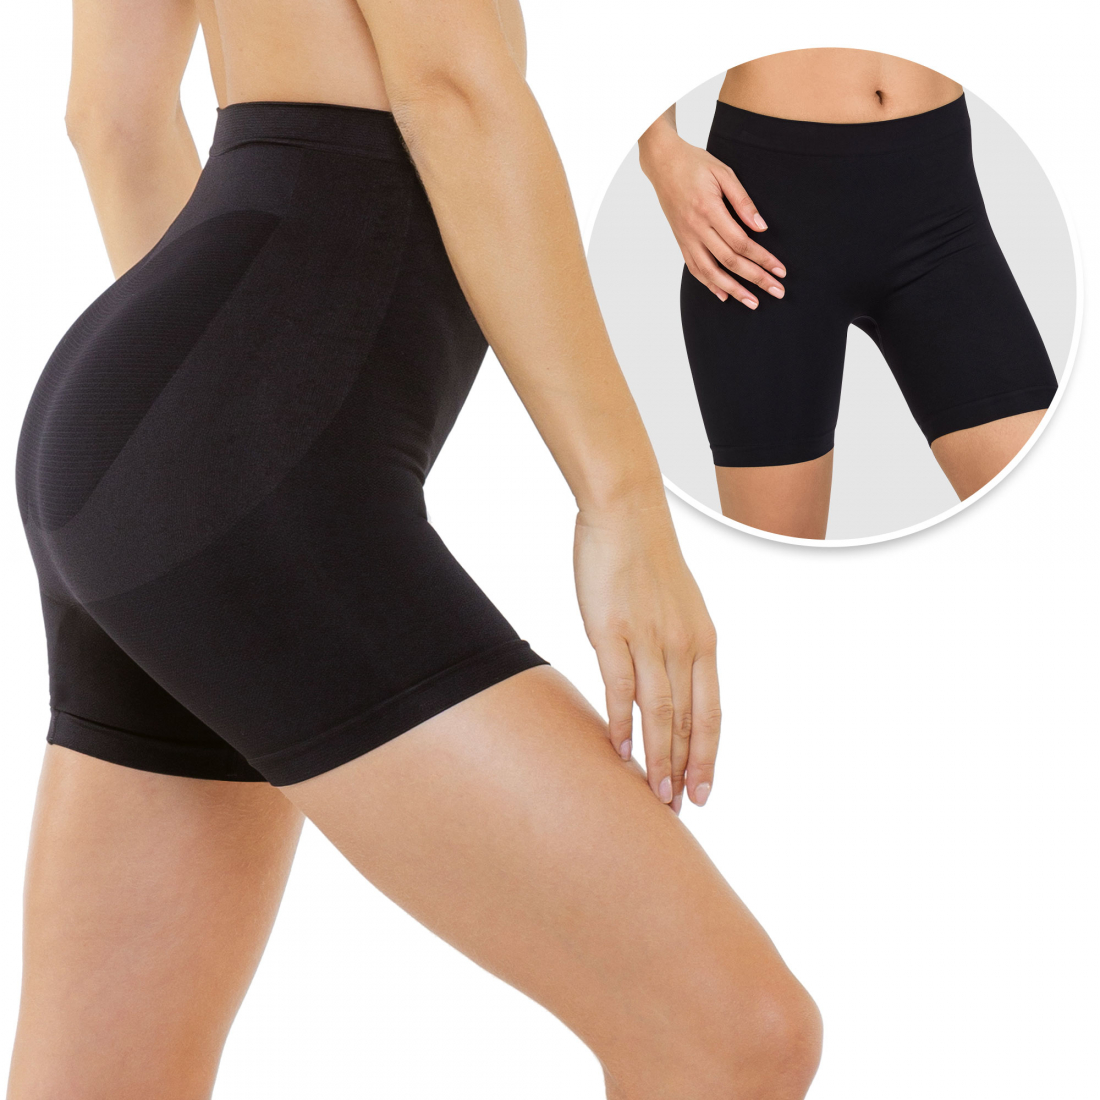 'Slimming' Modellierende Shorts für Damen - 2 Stücke